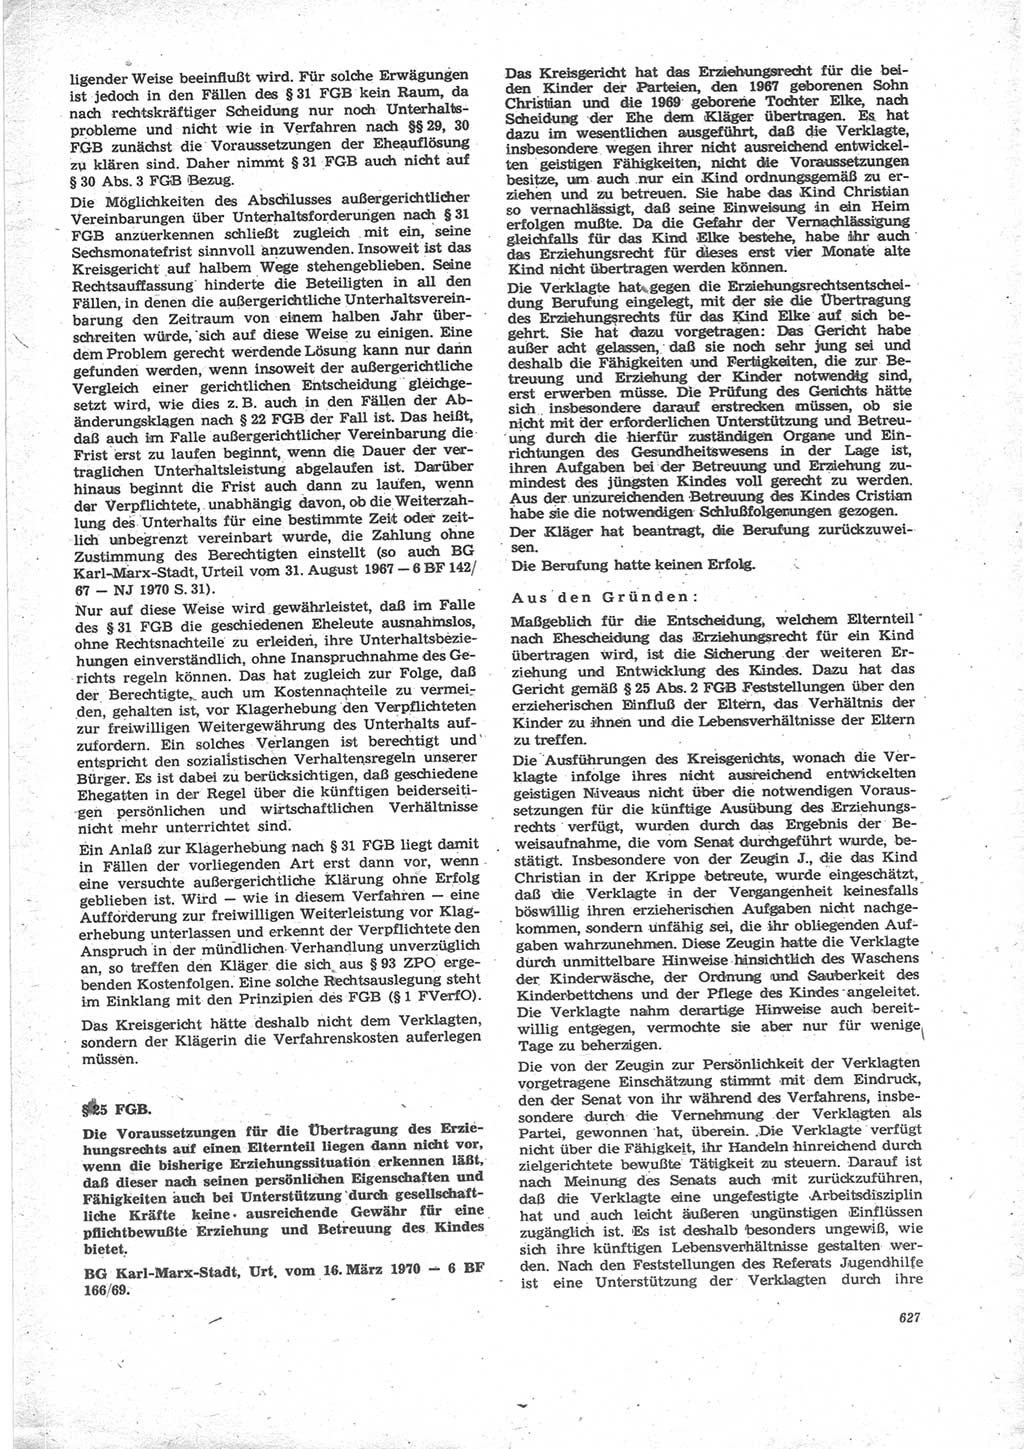 Neue Justiz (NJ), Zeitschrift für Recht und Rechtswissenschaft [Deutsche Demokratische Republik (DDR)], 24. Jahrgang 1970, Seite 627 (NJ DDR 1970, S. 627)